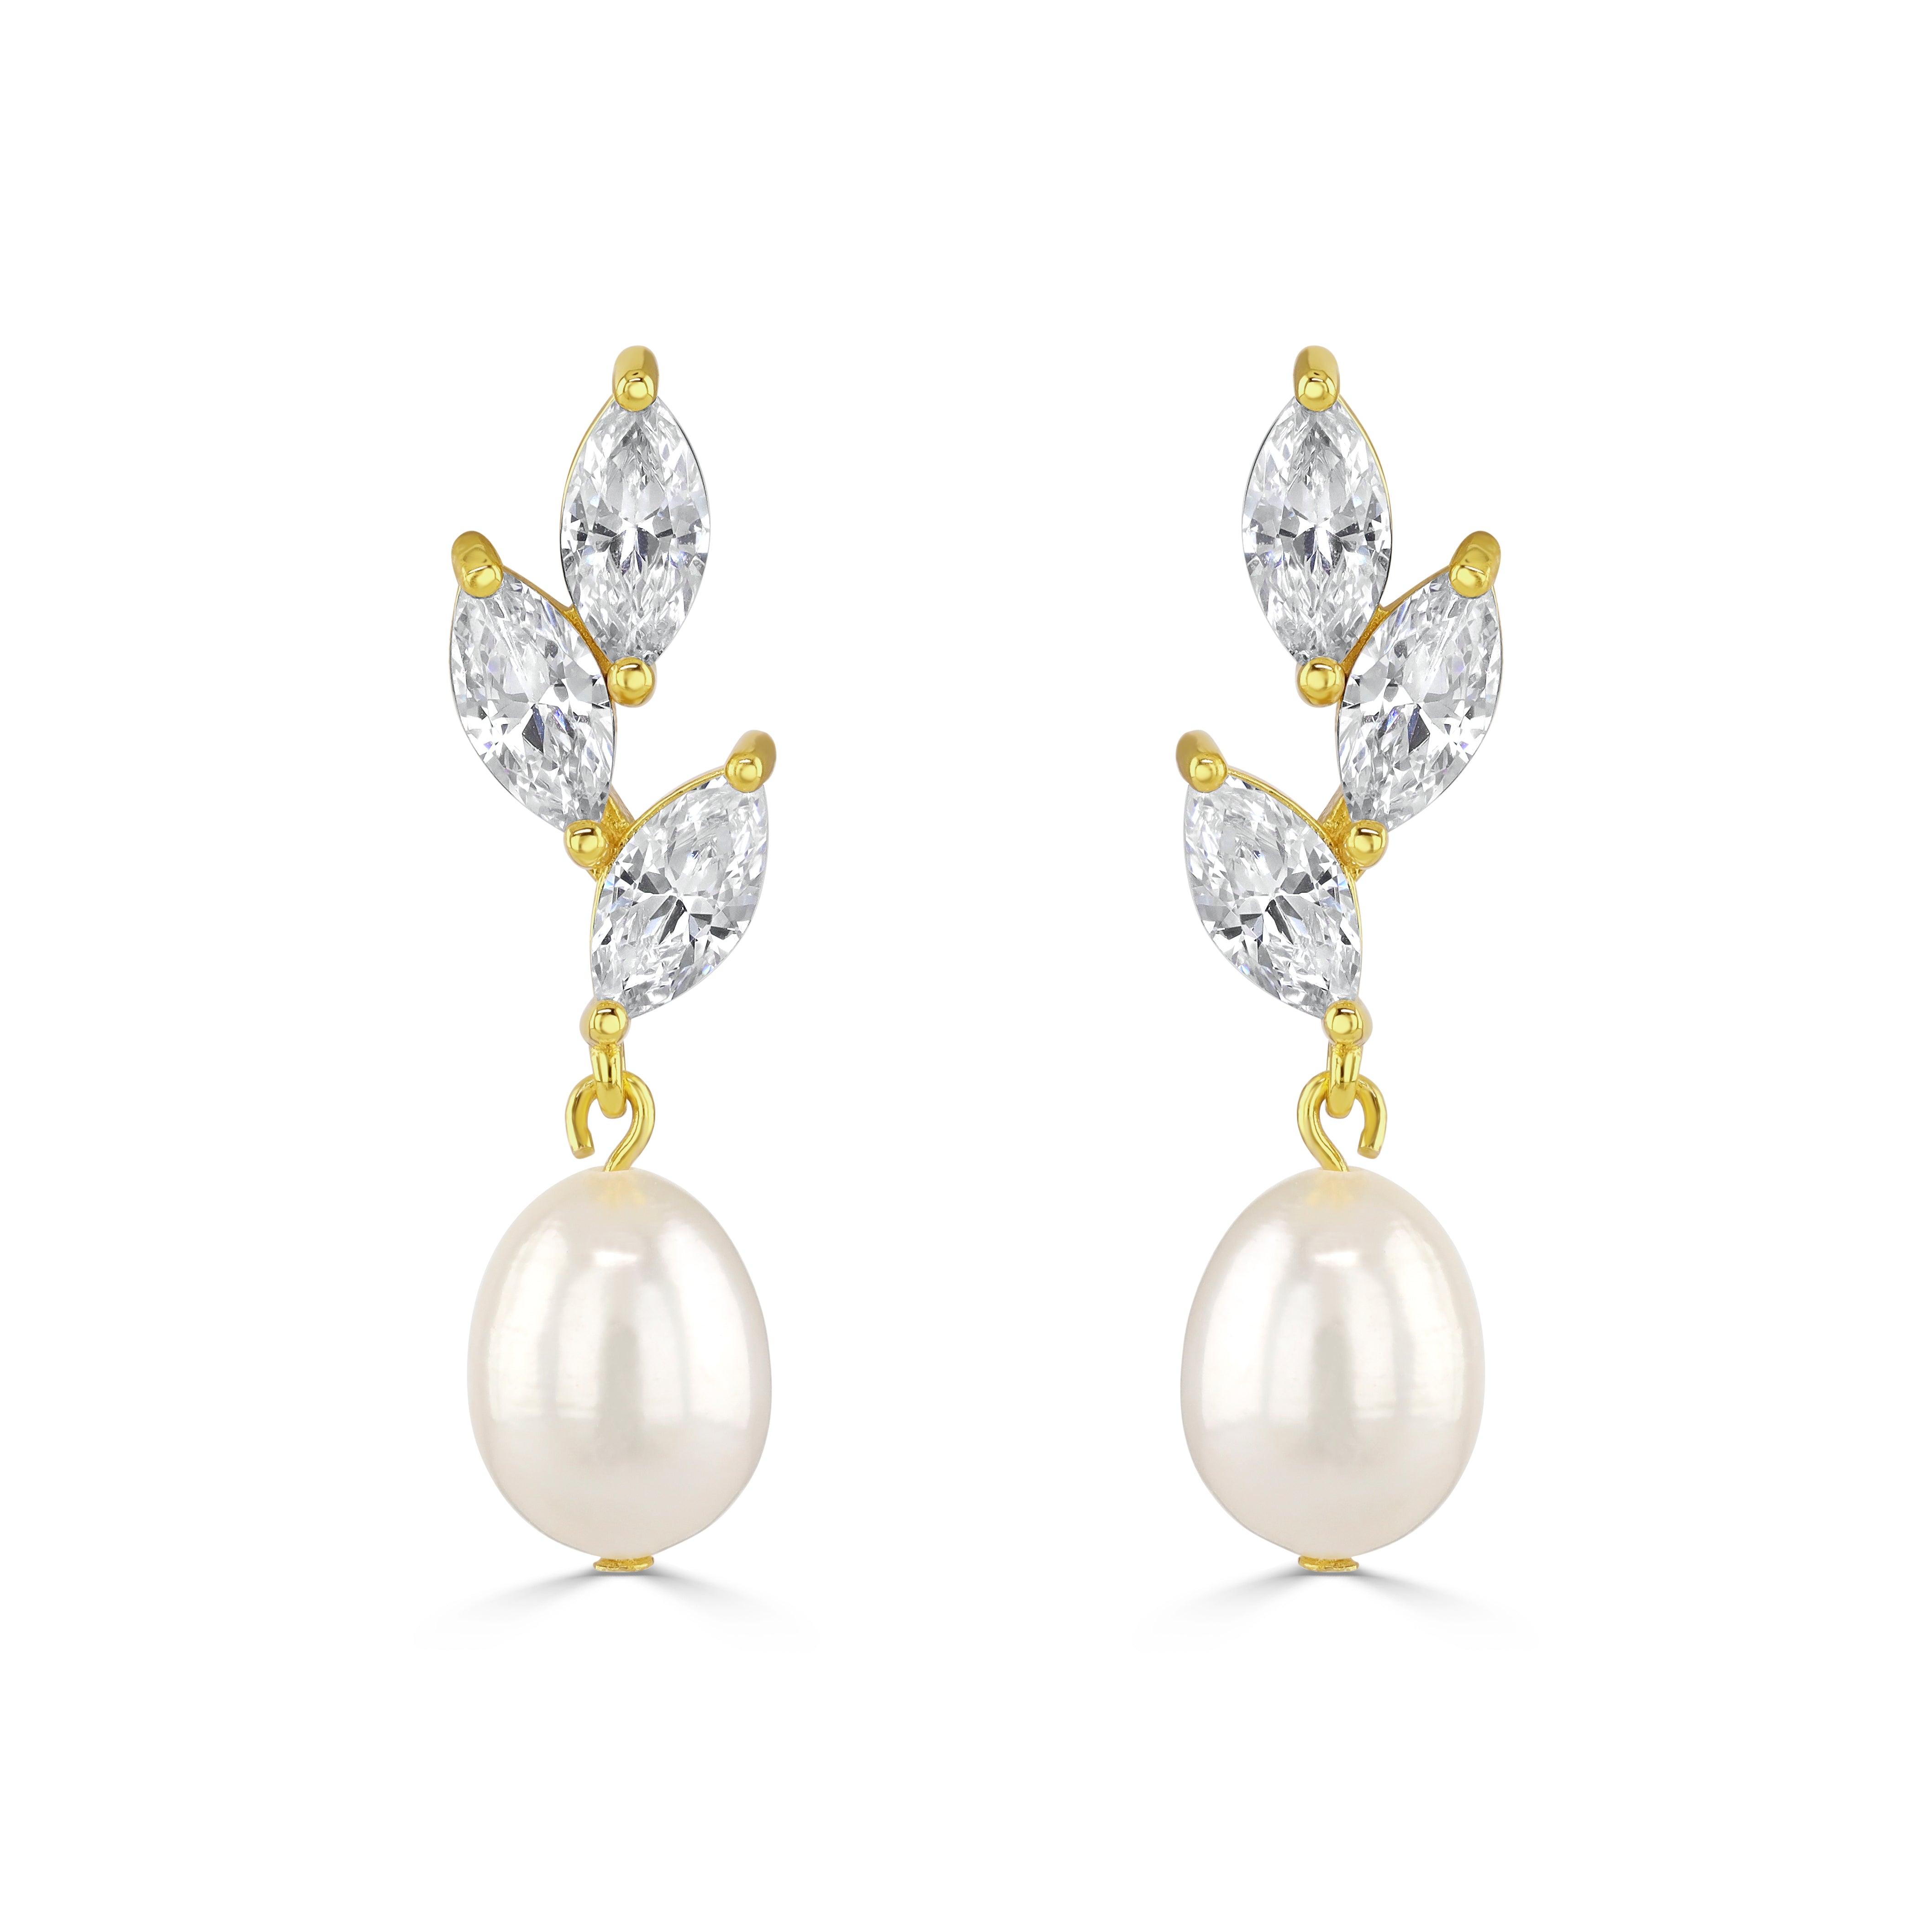 ERYN // Dainty silver cubic zirconia and pearl drop earrings